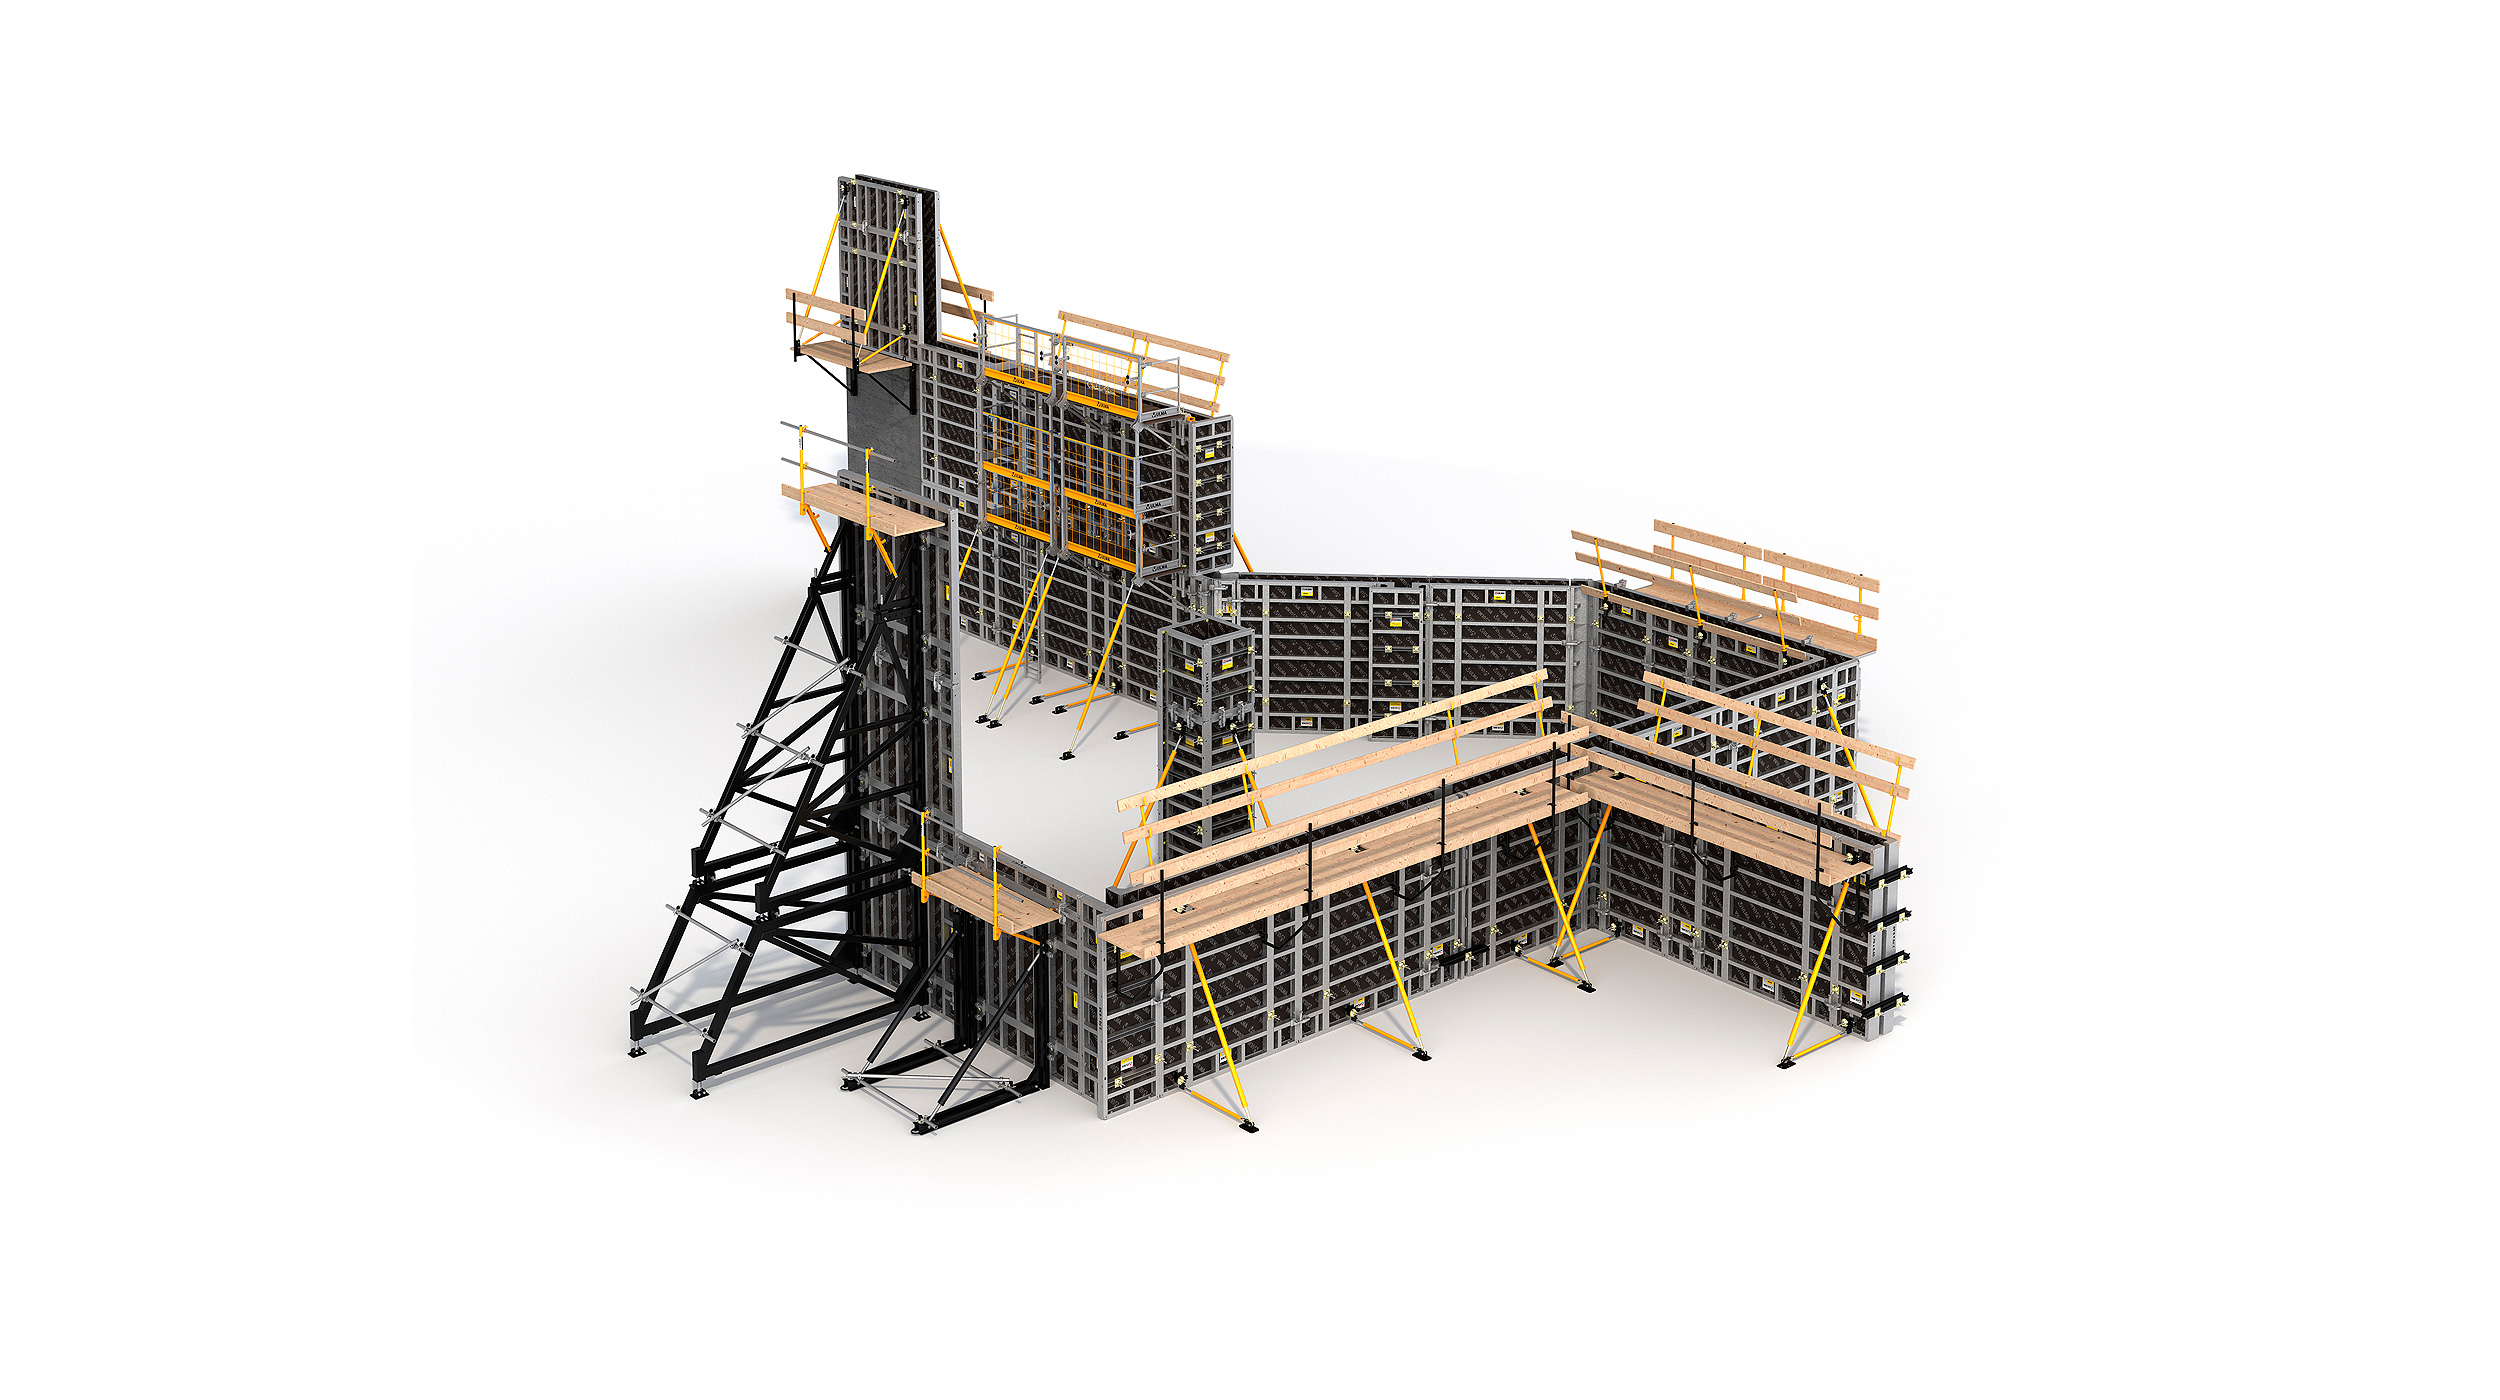 Sistema di casseforme modulari per la costruzione di qualsiasi struttura verticale in calcestruzzo. Punti di forza: alte prestazioni con un costo di lavorazione minimo.